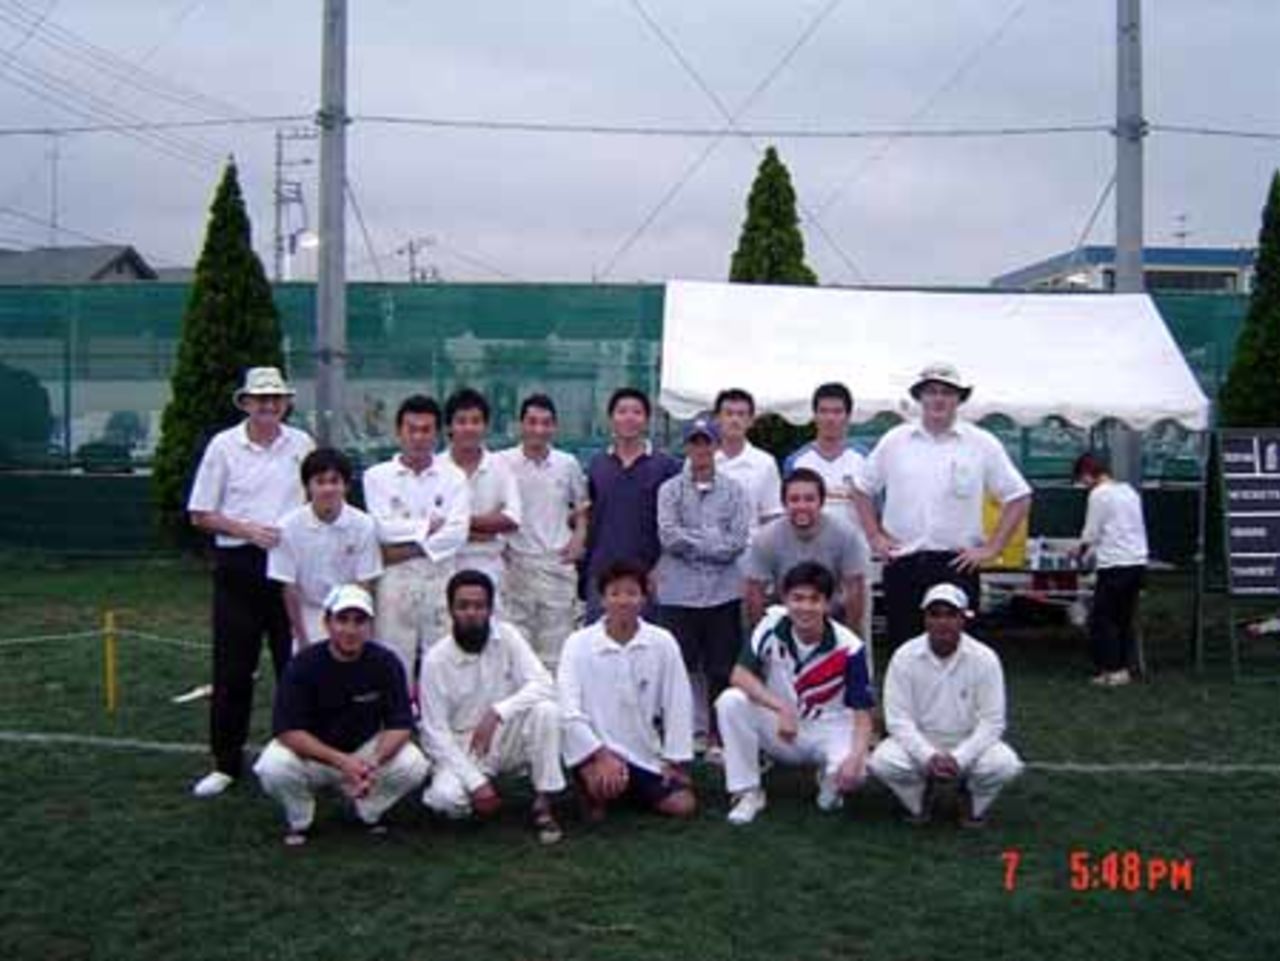 Japan umpiring course, Sep 2003